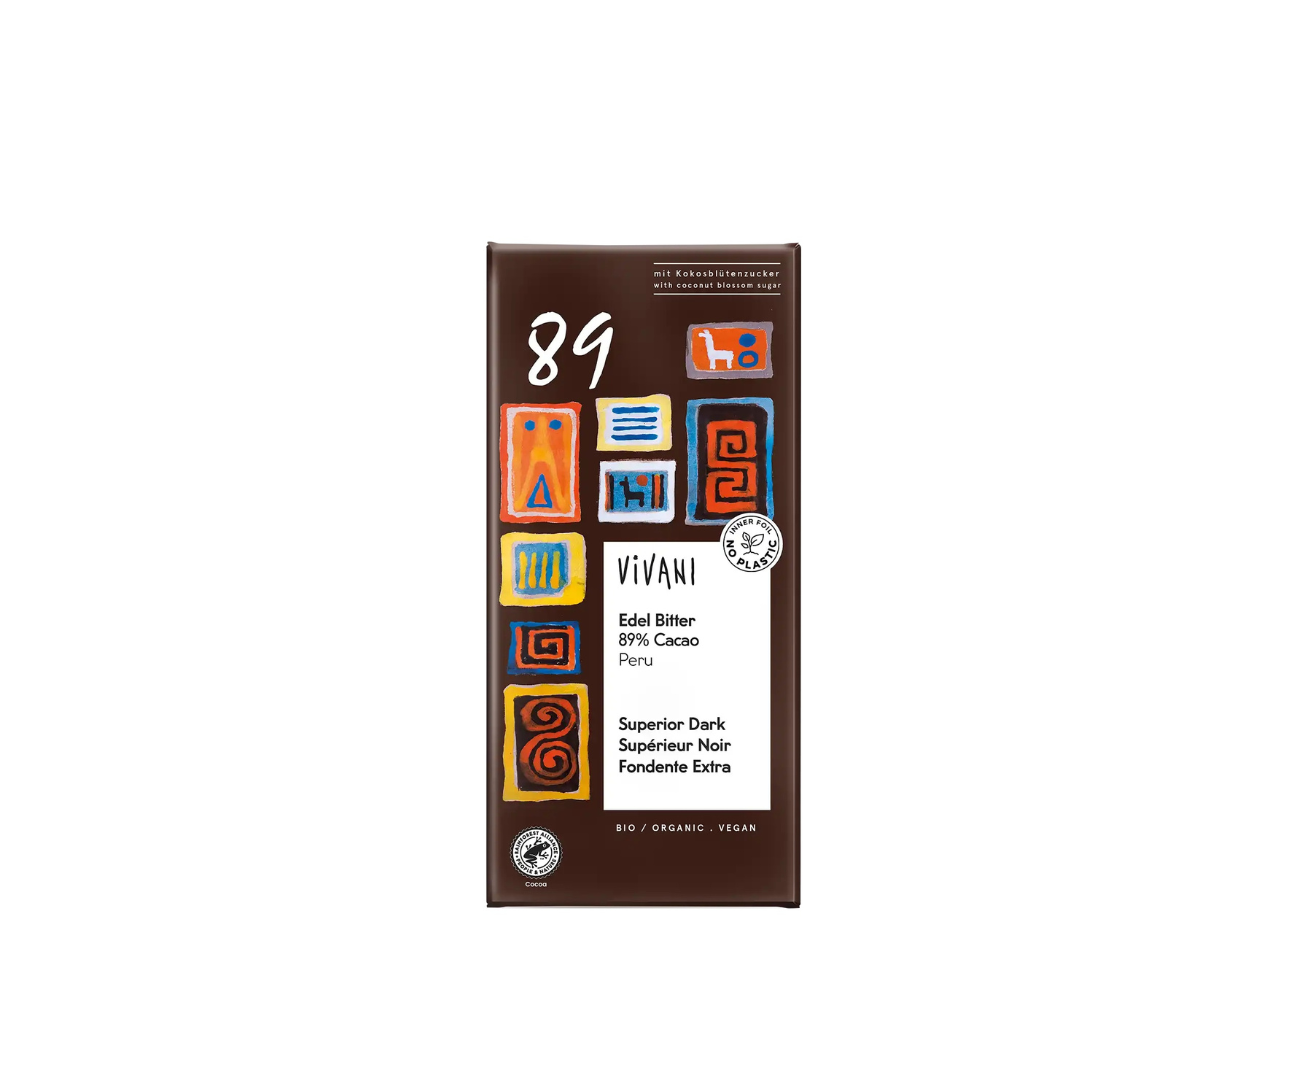 Chocolat superieur noir 89% cacao 80g vivani